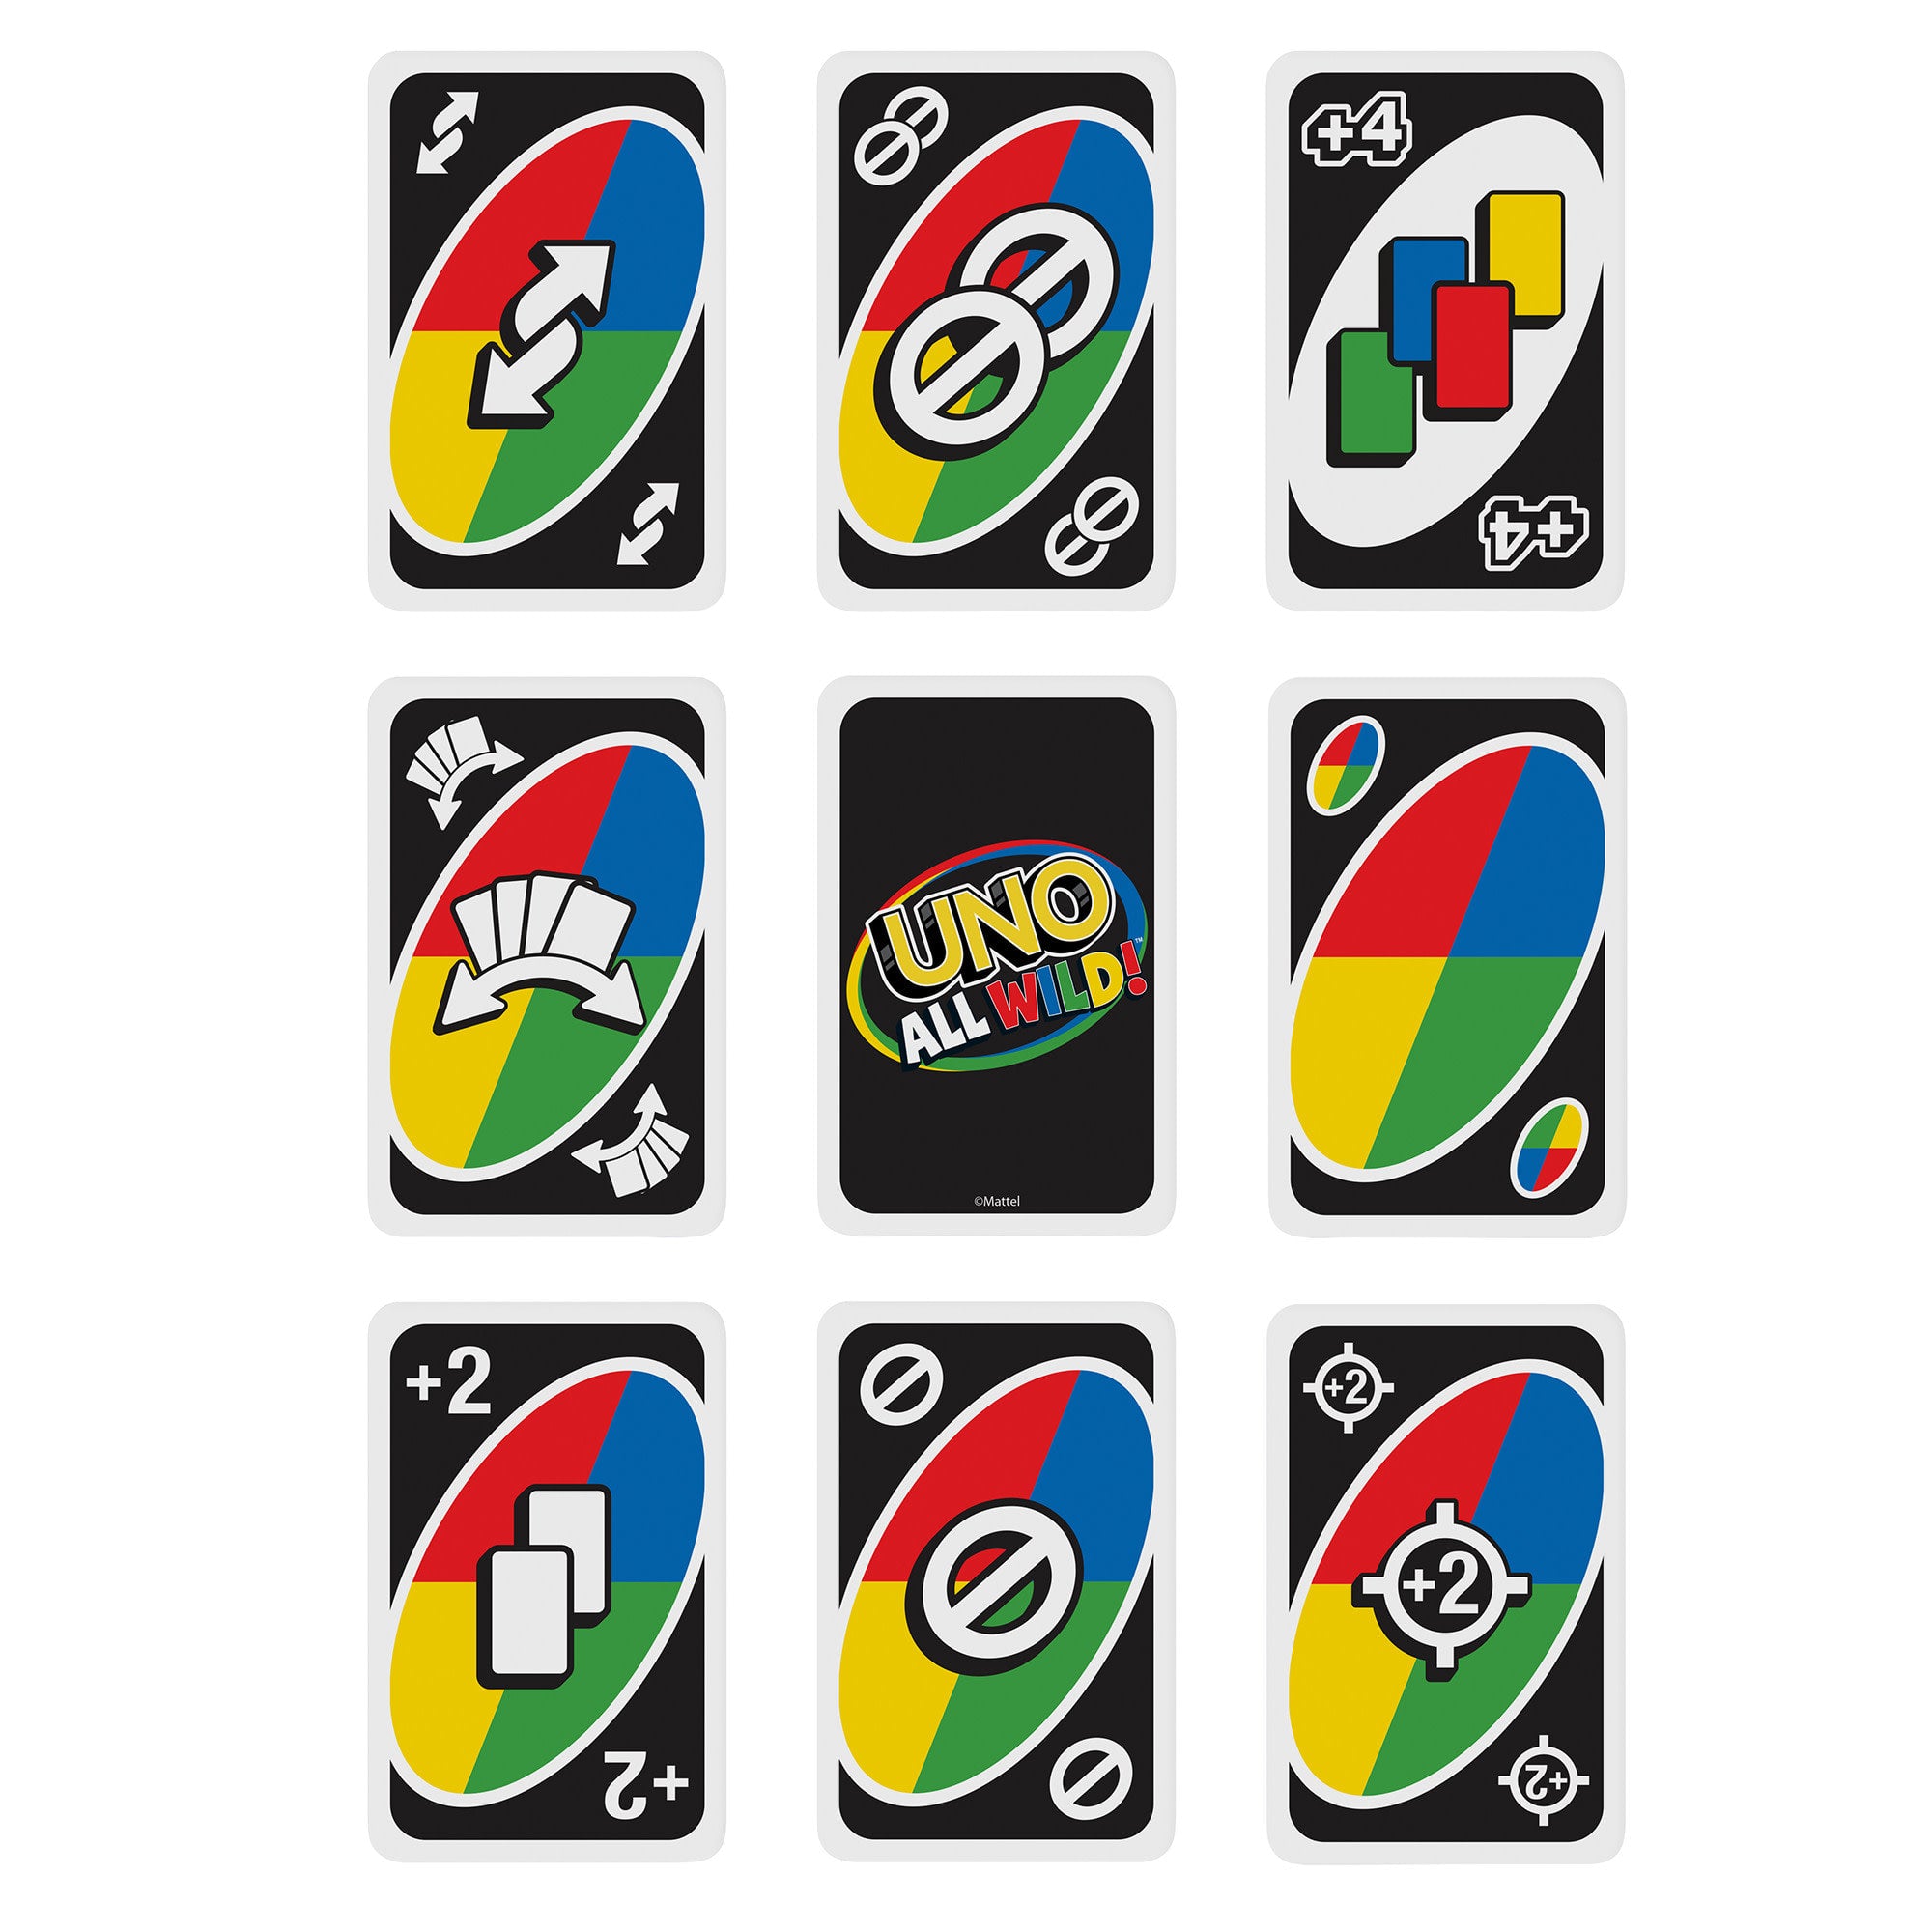 Règle du Uno - Règles officielles du jeu Uno